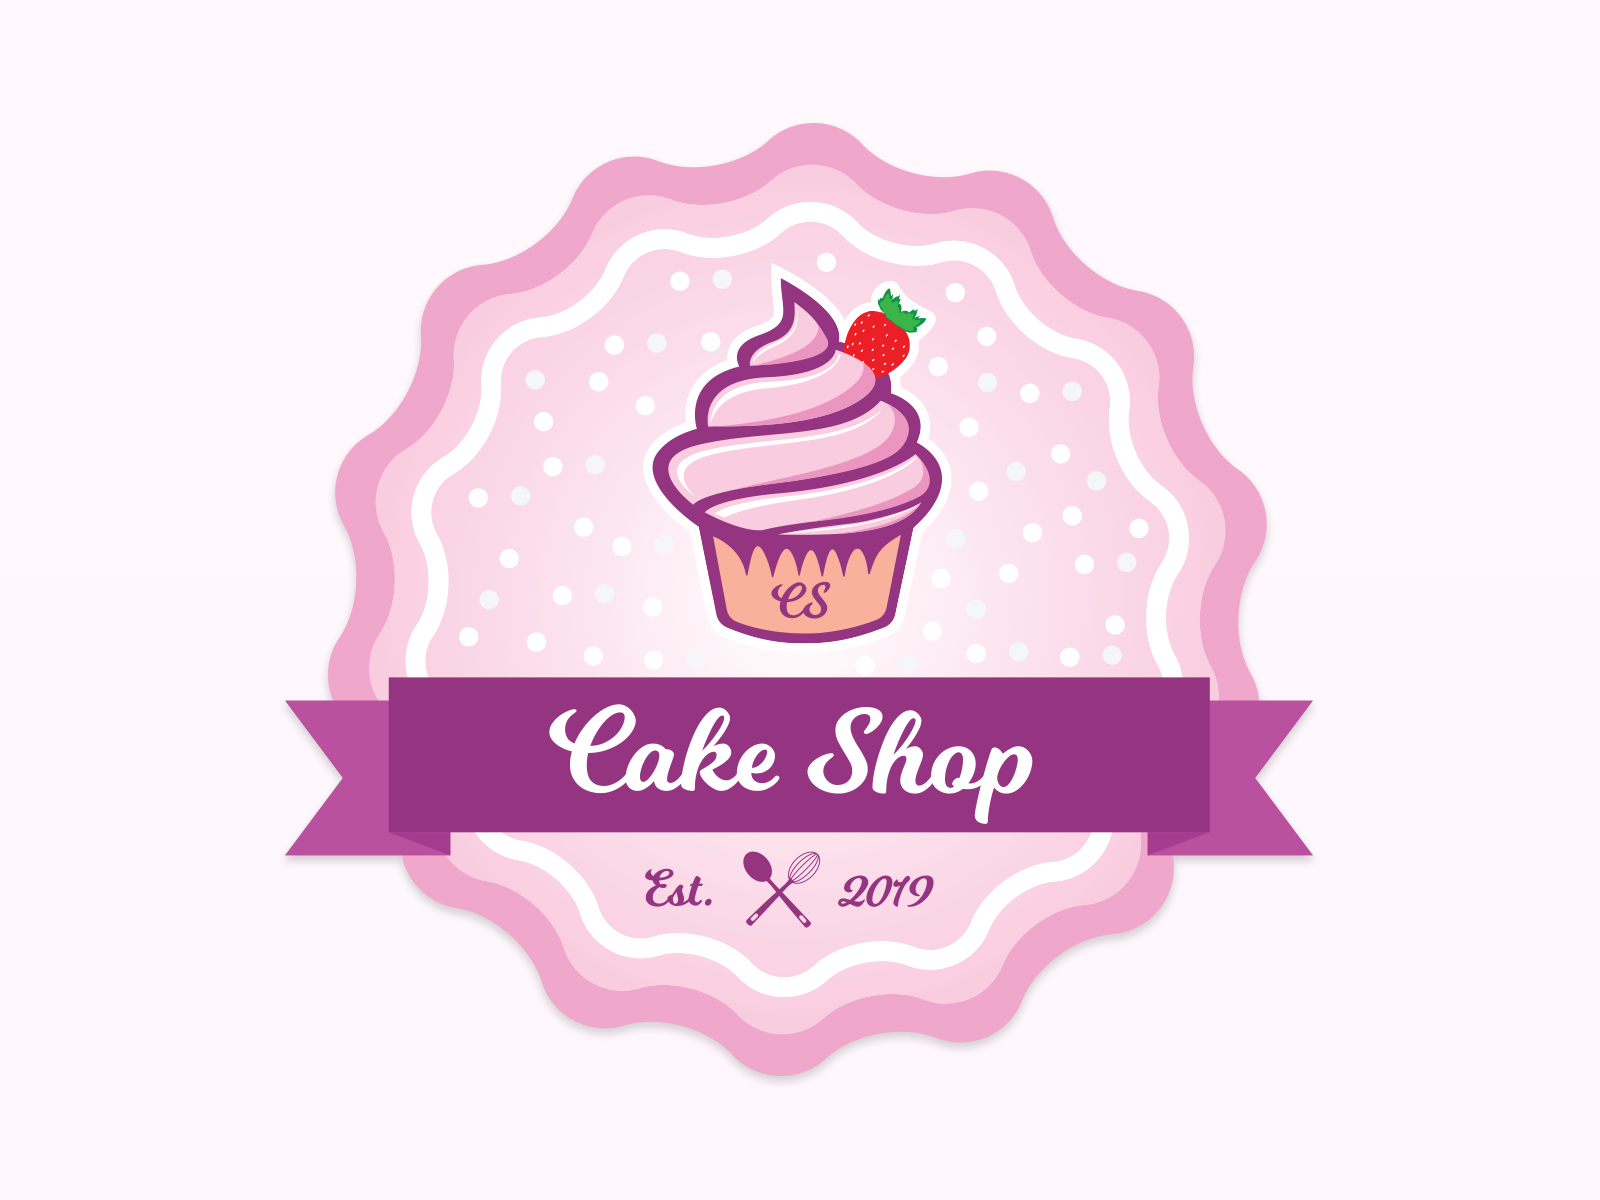 FRUIT CAKE - Baker's Hub, Nepal: Online Cake Delivery Platform